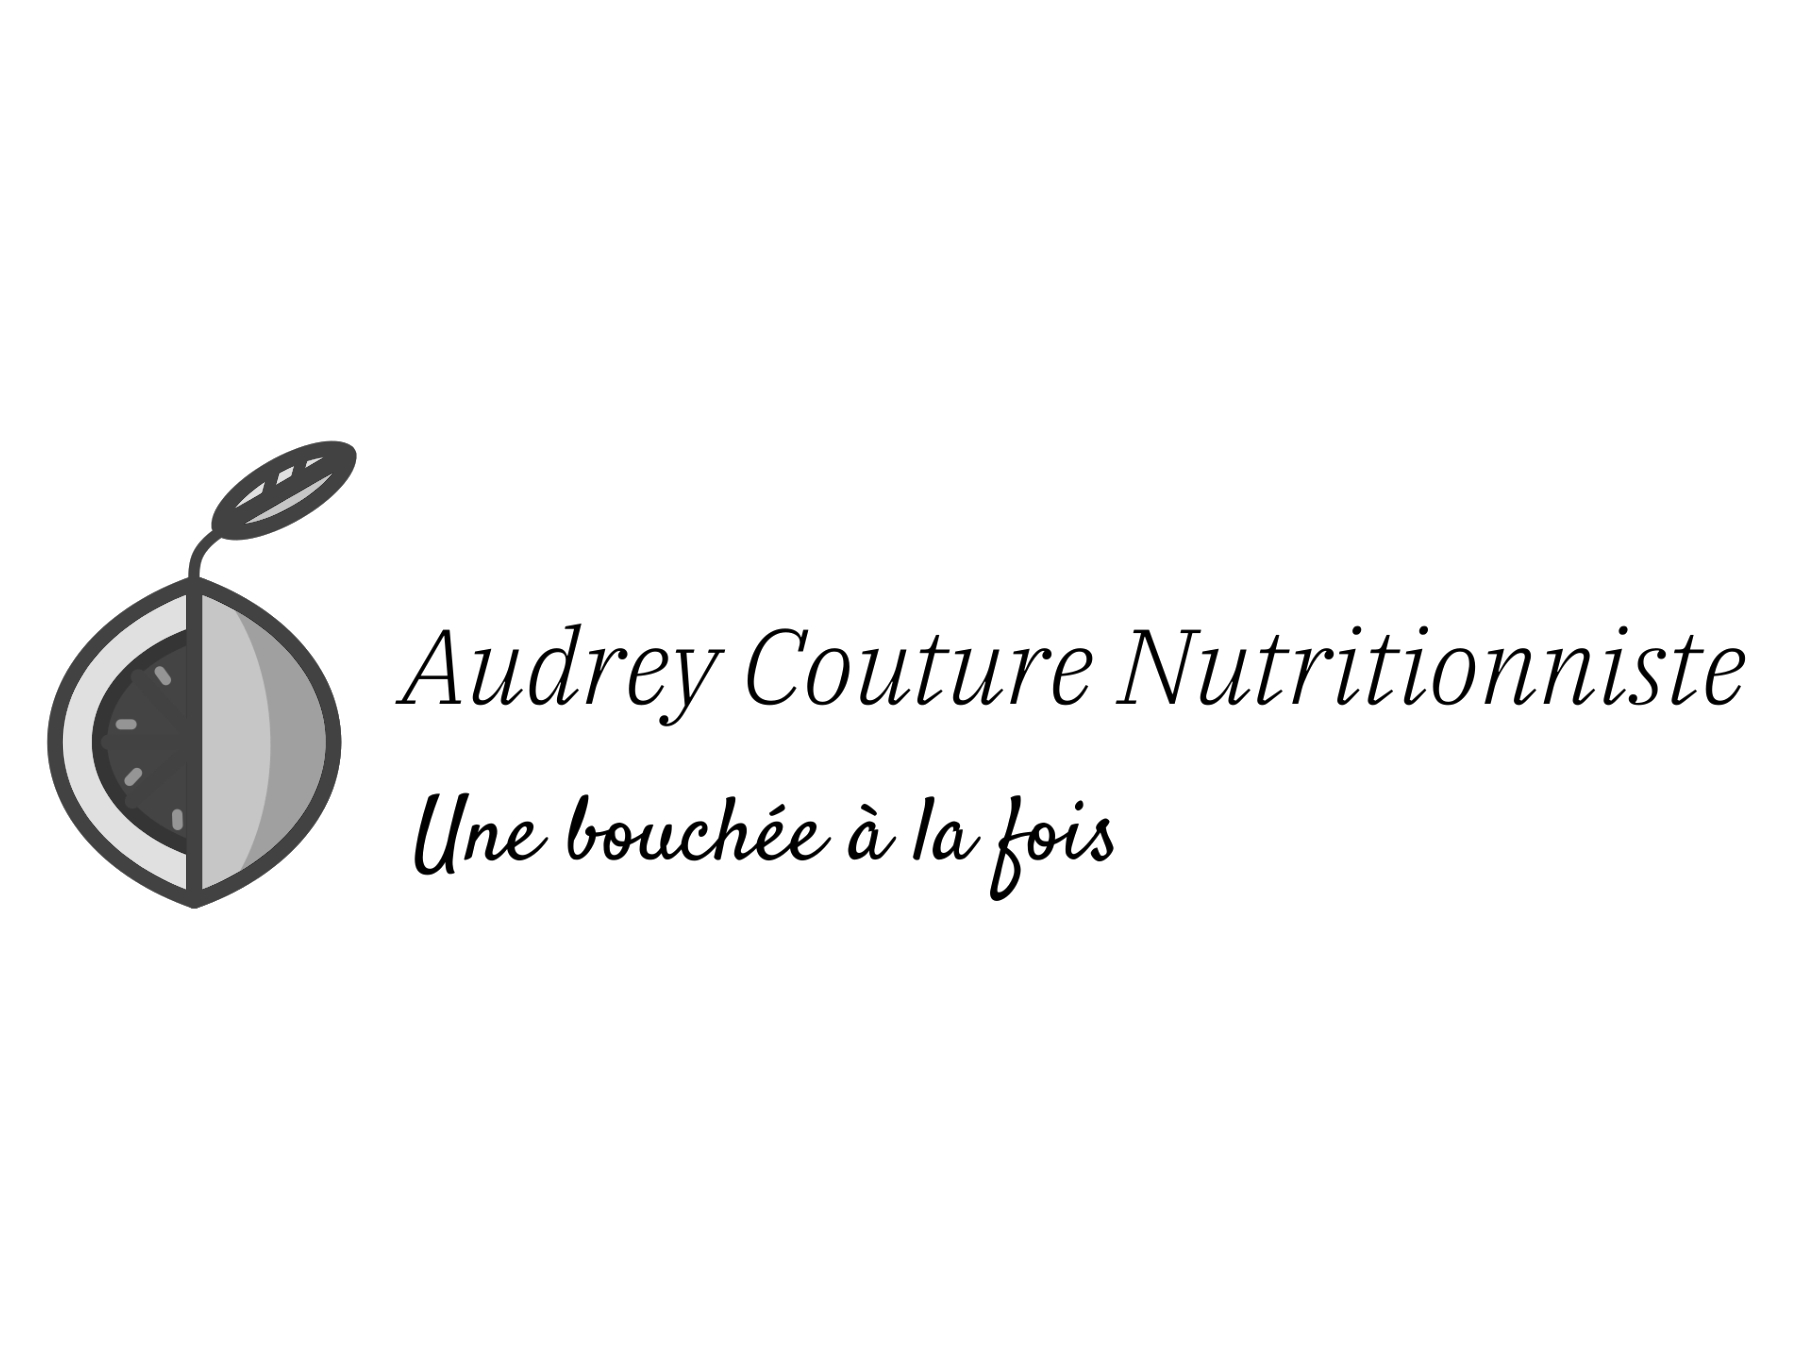 Audrey Couture Nutritionniste, vous offrirons un service exceptionnel et notre clinique chiropraticien Actif sont partenaire depuis plusieurs années